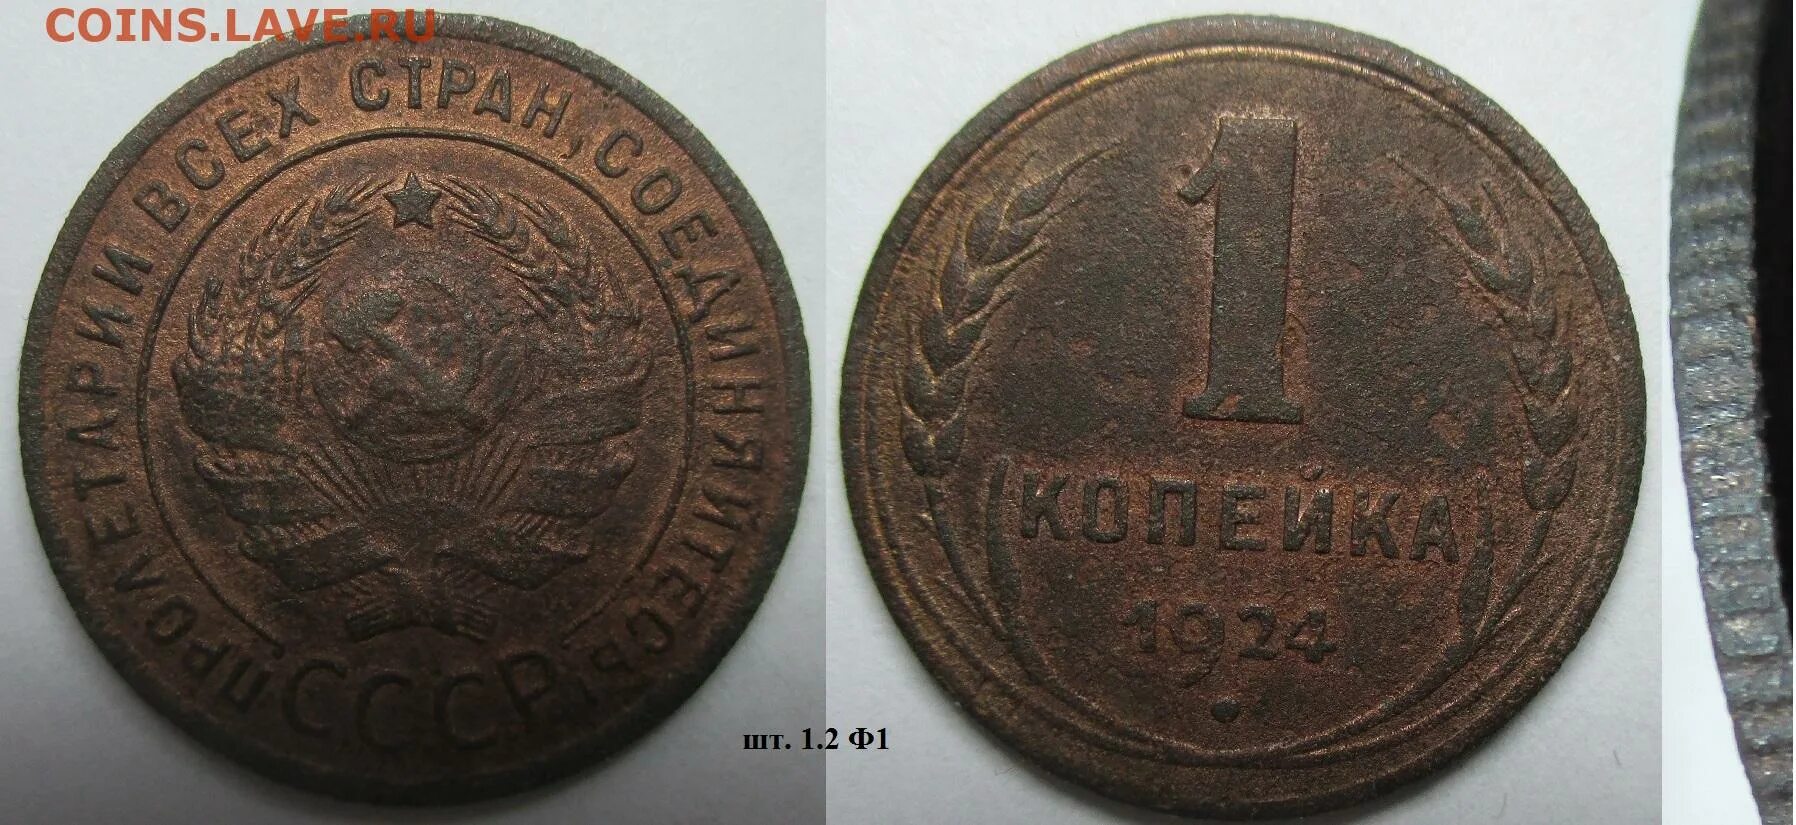 1 к 1924 г. 1 К 1924. 1к.1924 вытянутые. Авито монеты СССР. 333/К1924.